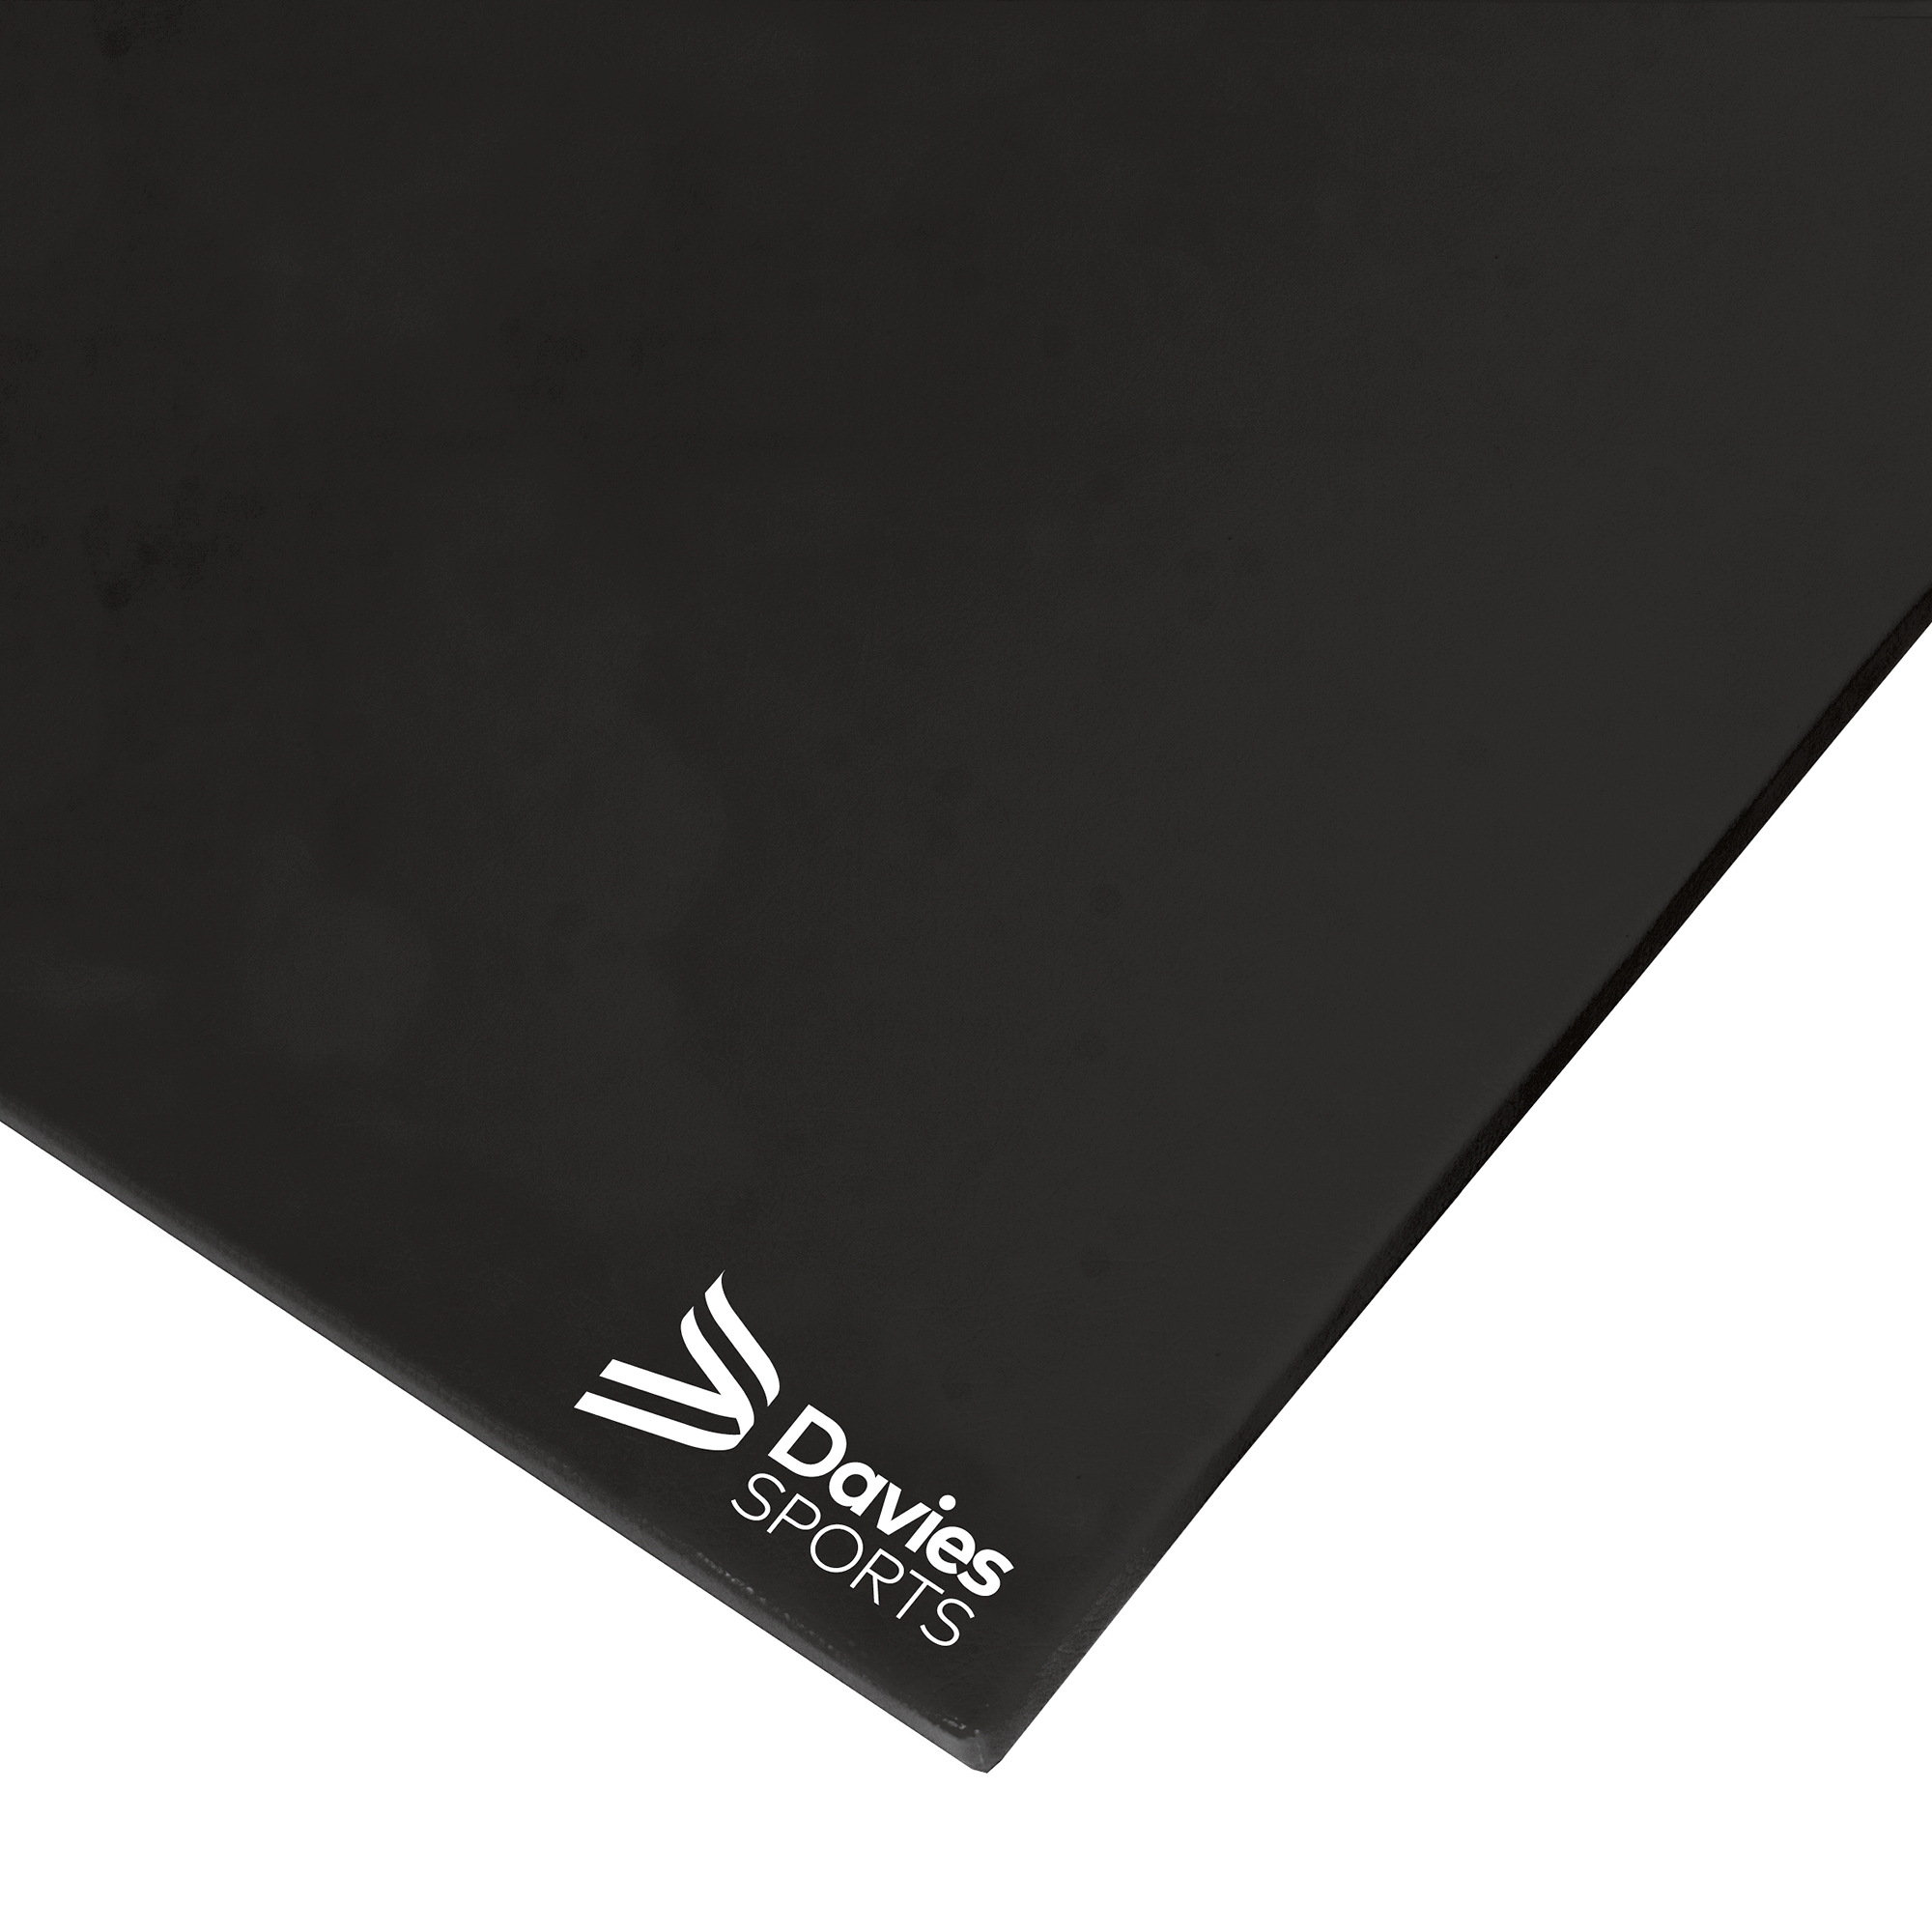 Davies Sports Deluxe Chipfoam Mat Standard Black - 1.22m x 0.91m x 32mm